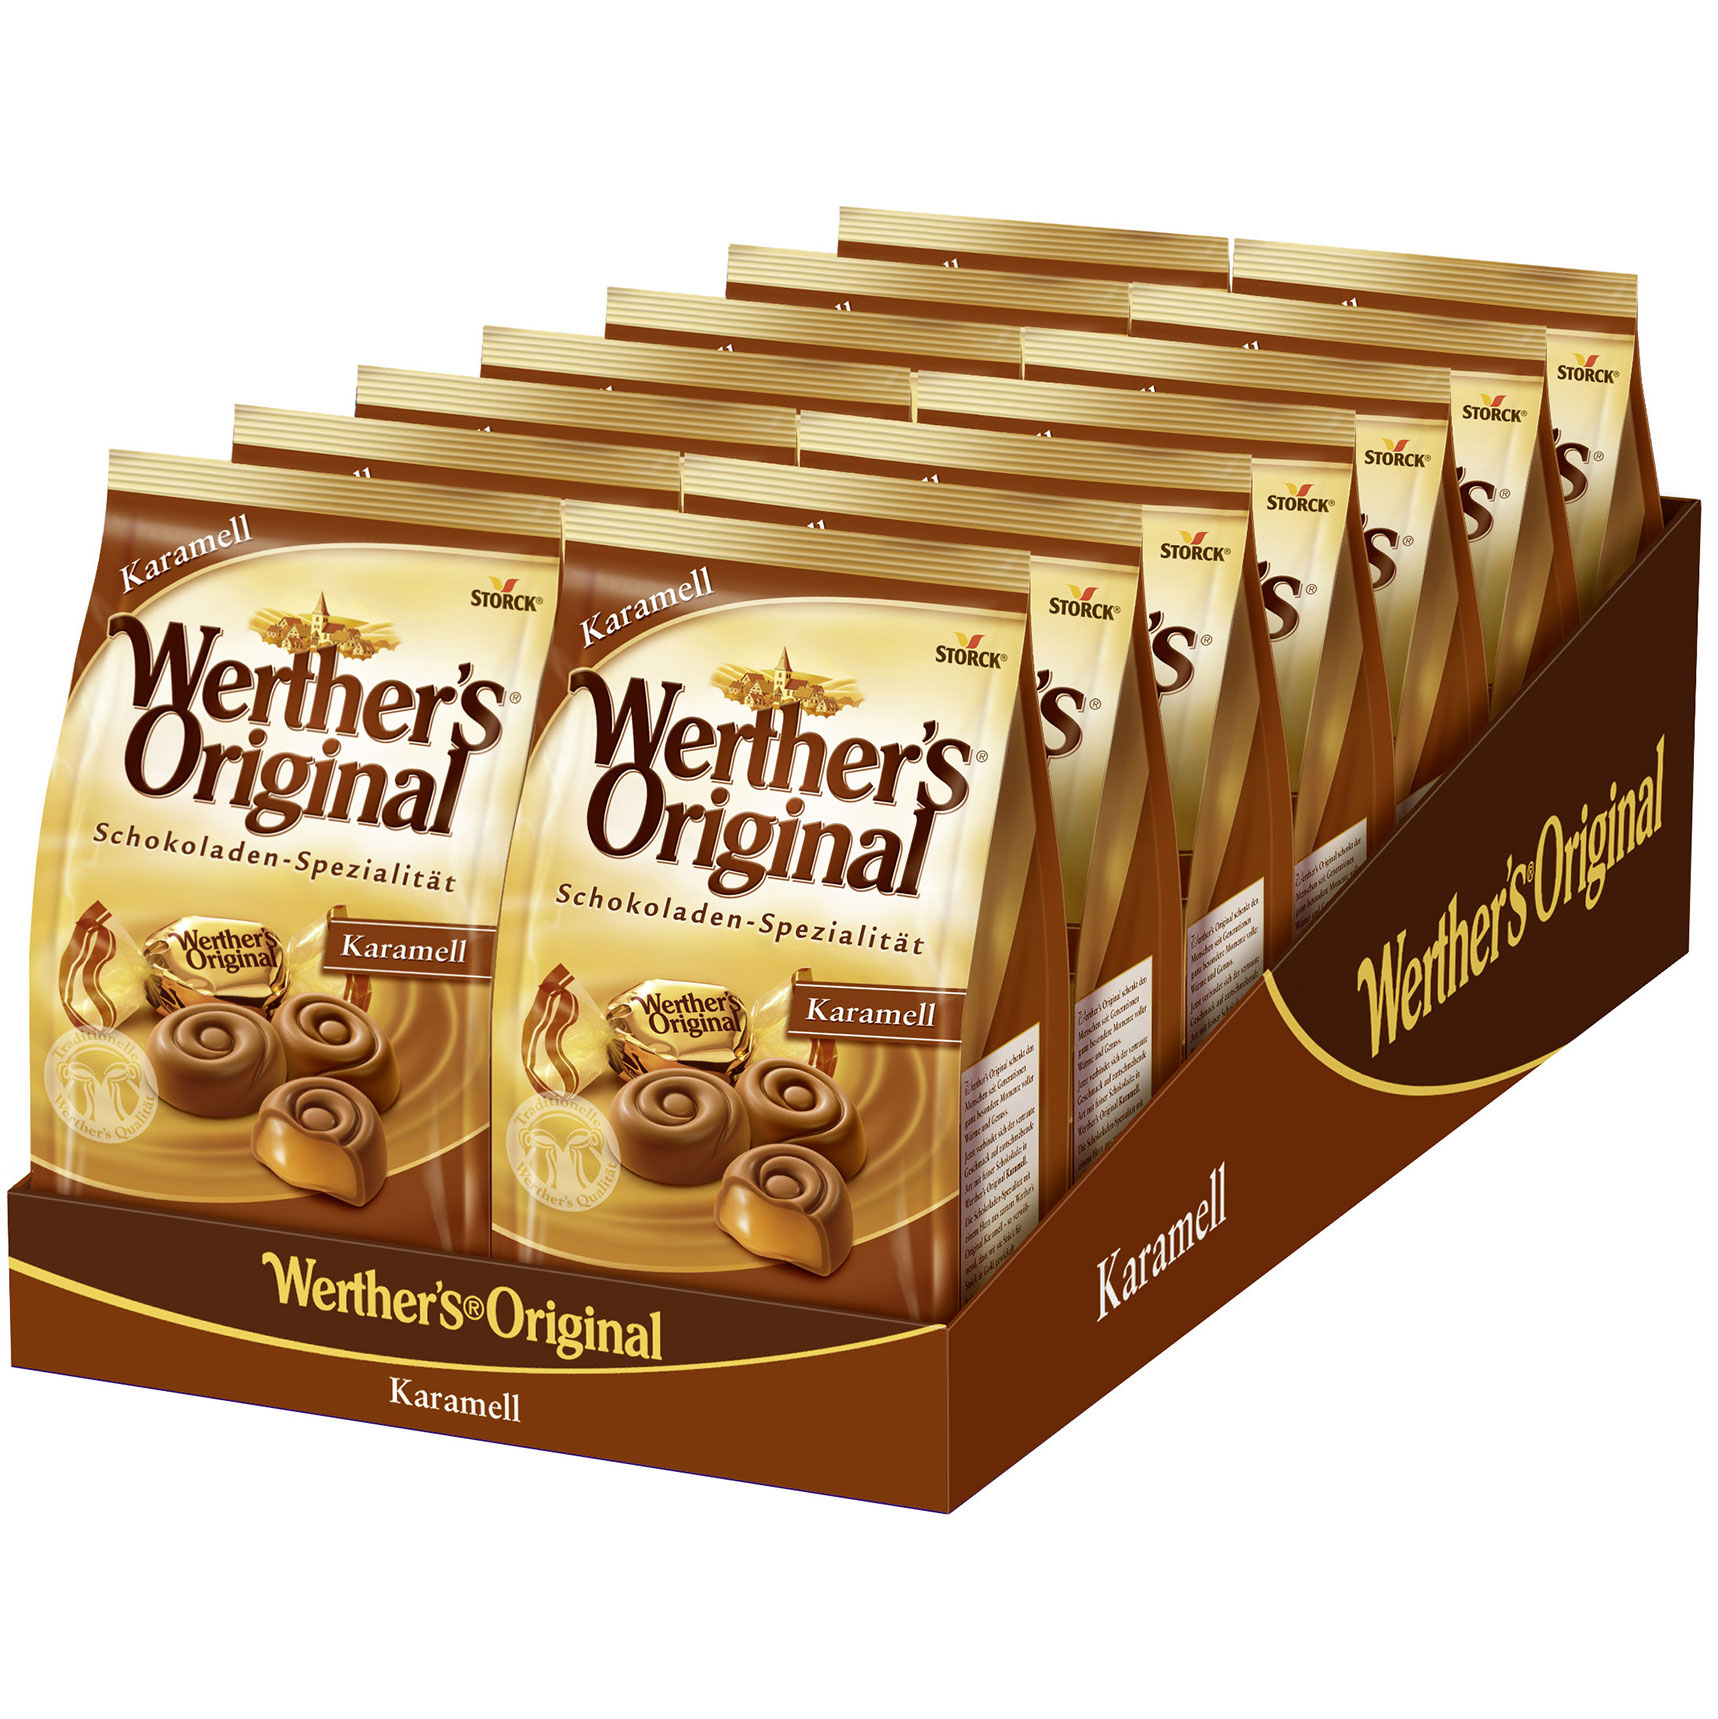 Werther's Original Schokoladen-Spezialität Karamell 153g | Online kaufen im  World of Sweets Shop